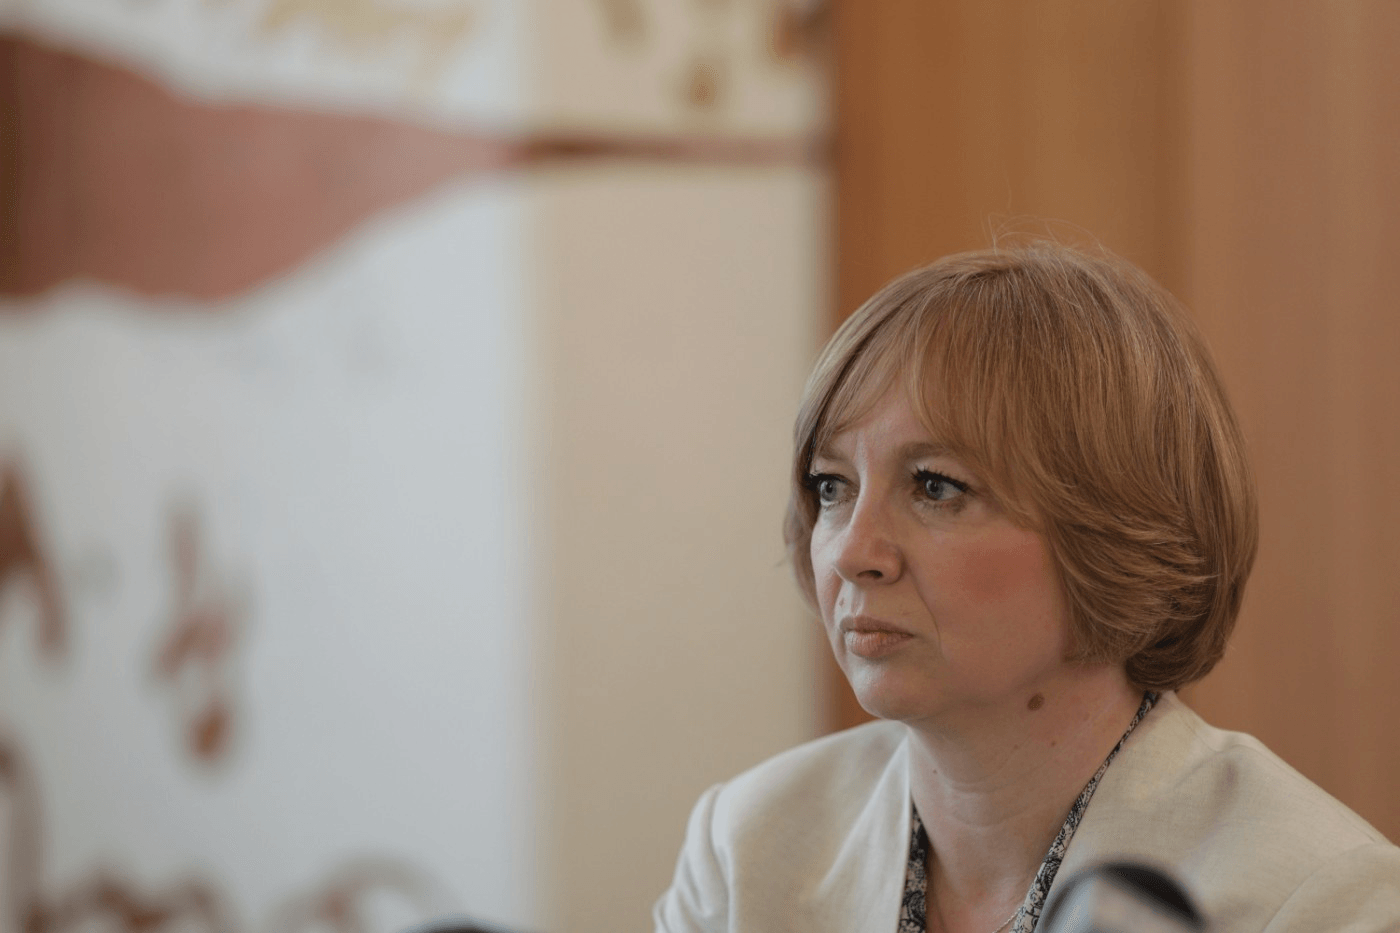  Emilia Şercan: Demisia ministrului Sorin Cîmpeanu după scandalul plagiatului e un gest de normalitate